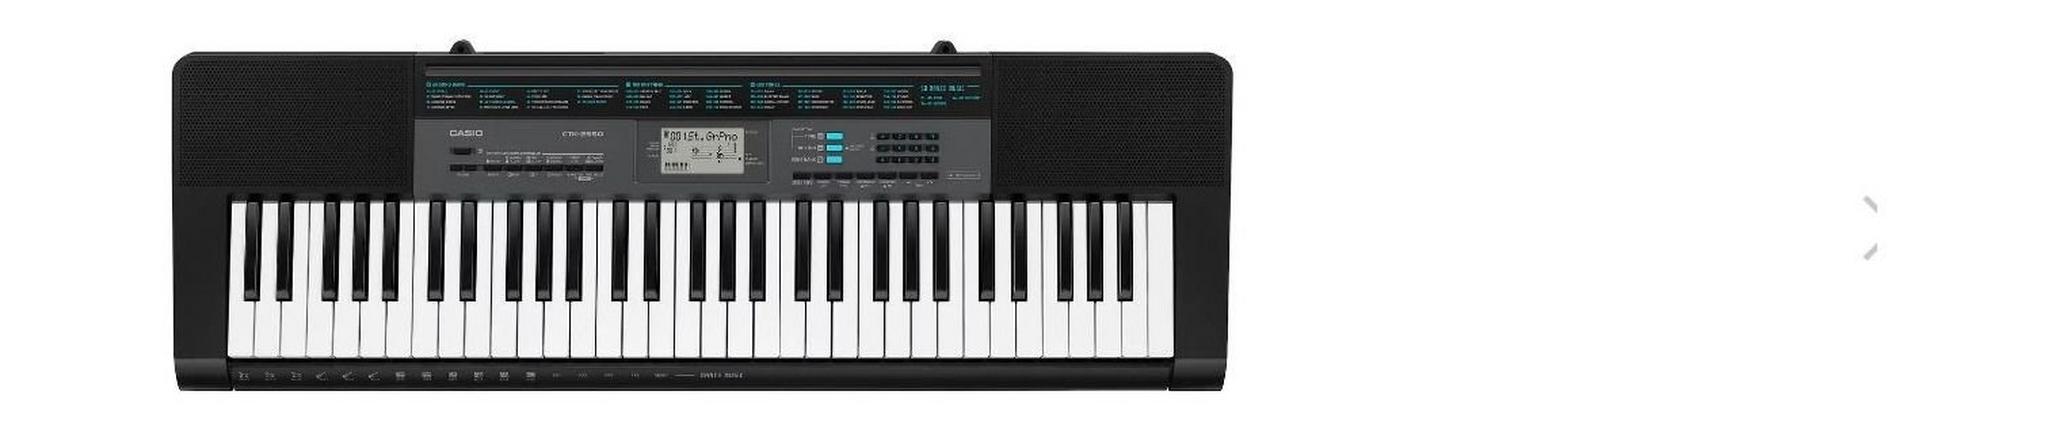 لوحة مفاتيح موسيقية ٦١ مفتاح من كاسيو - CTK-2550